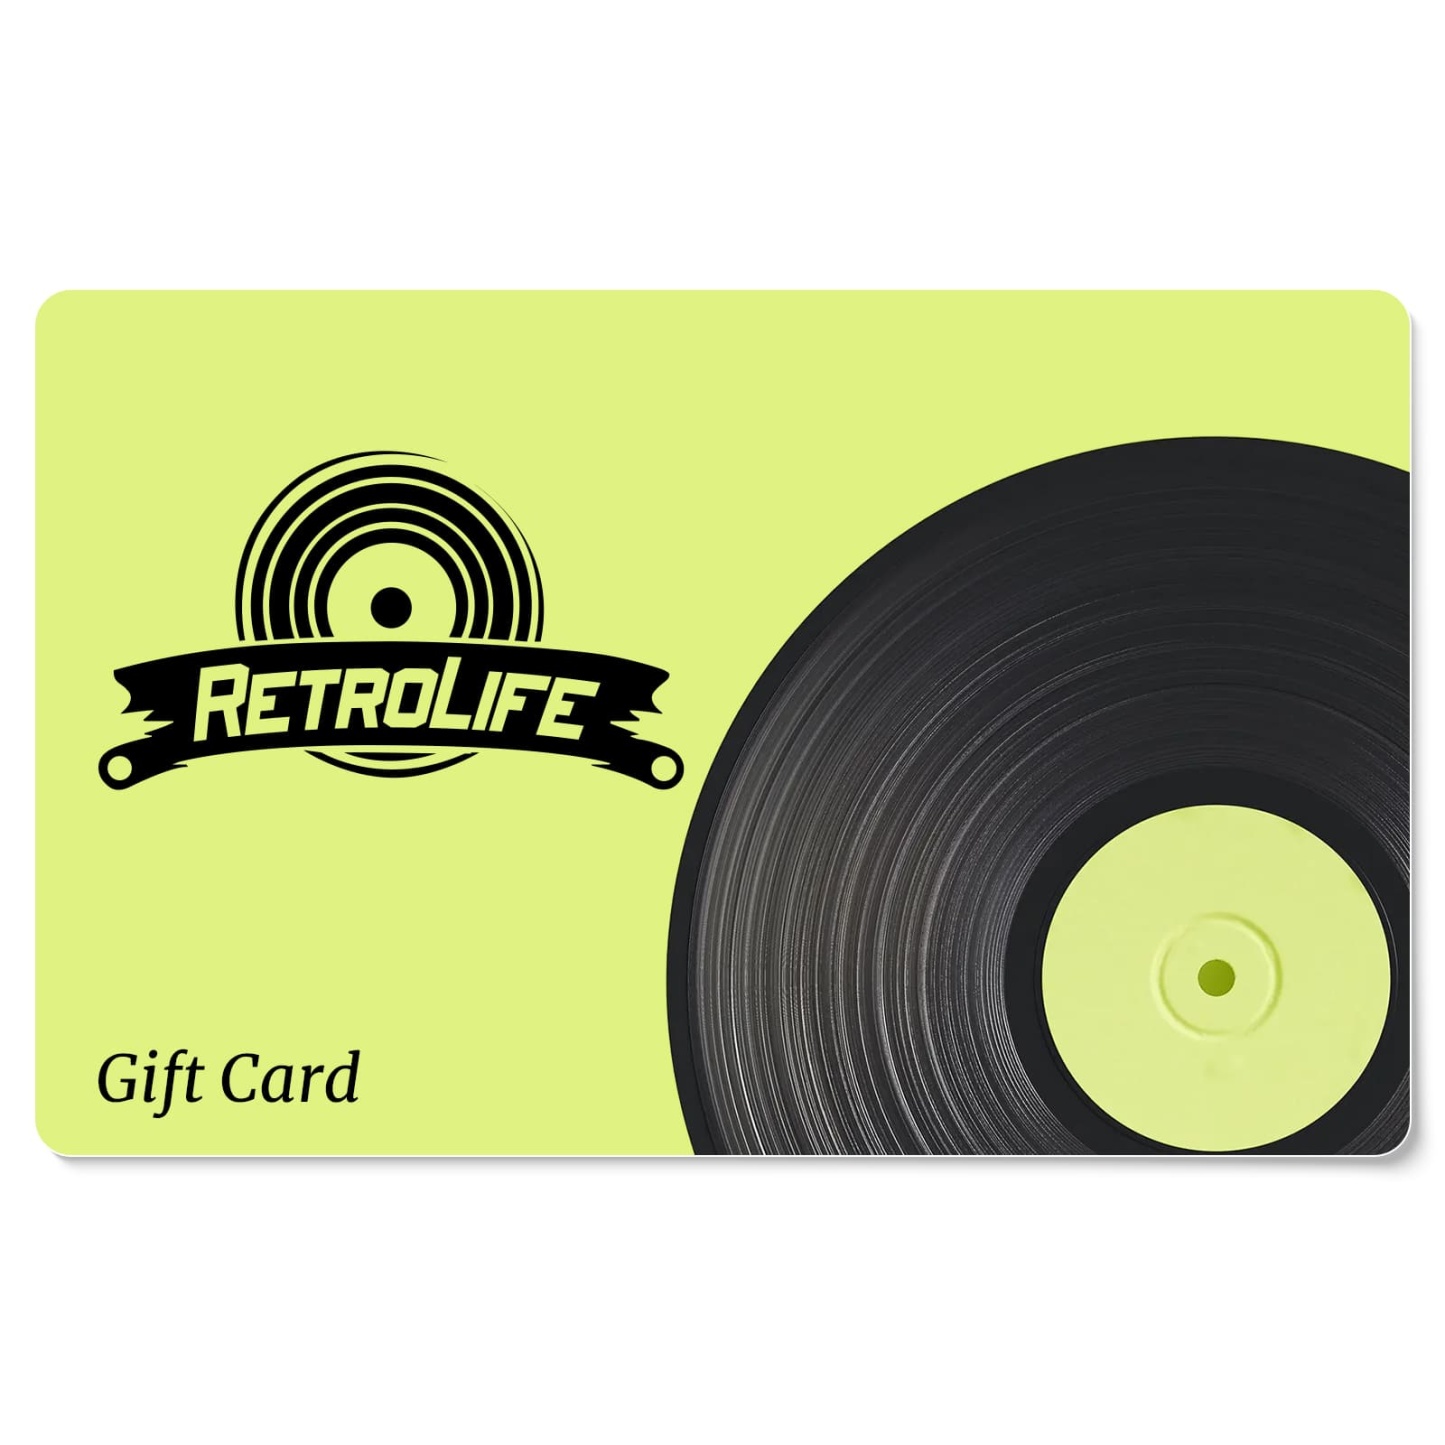 Retrolifeplayer.com Gift Card